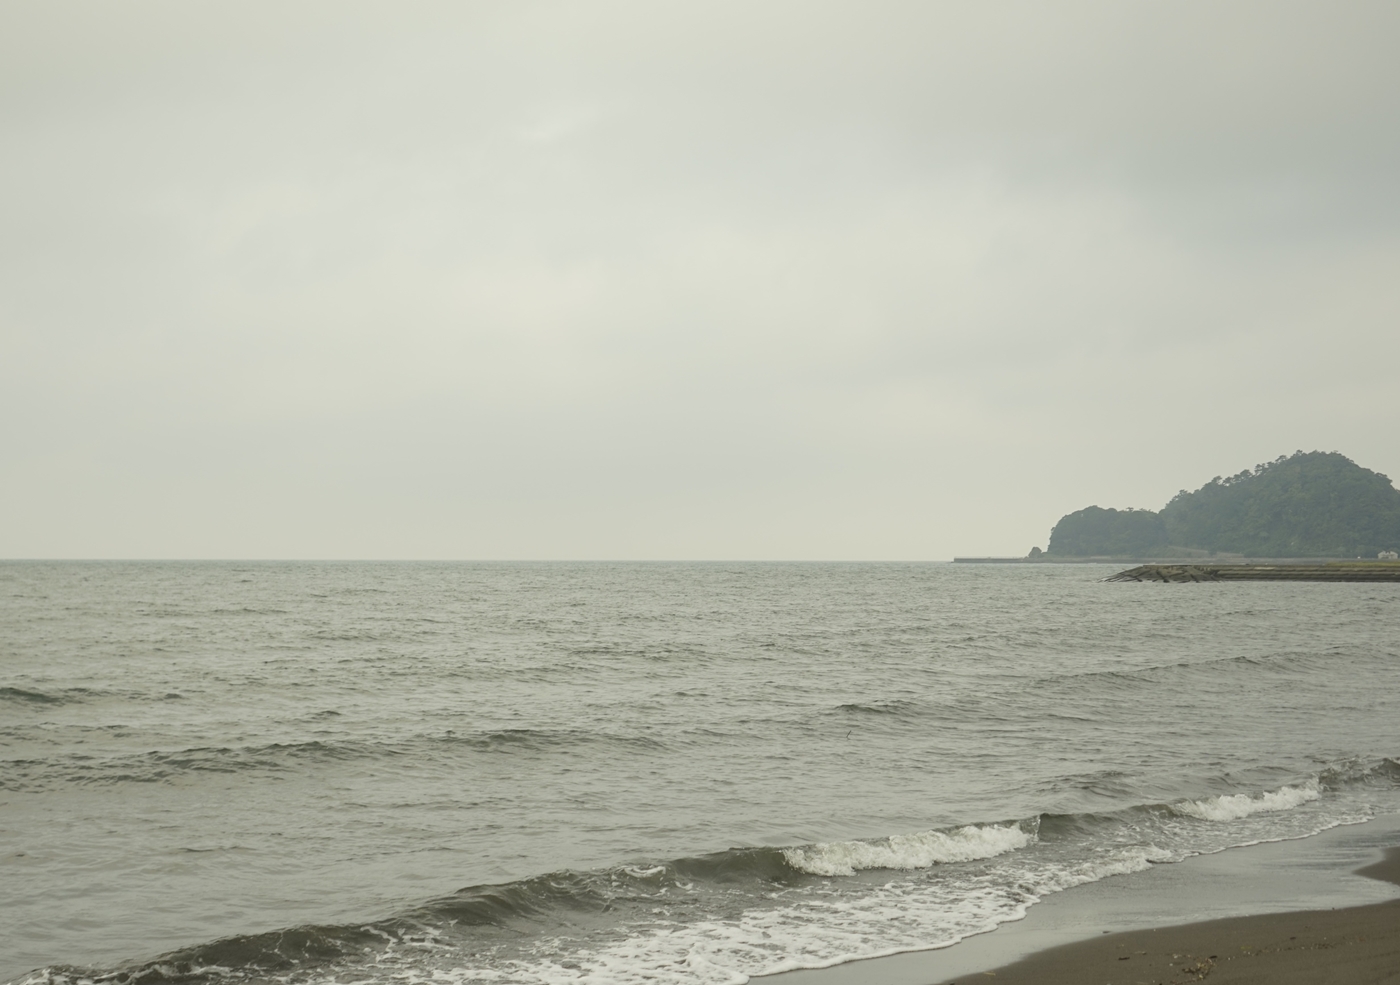 桜内梨子が新しいユニット名を「スリーマーメイド」を連想する前のシーンの背景は、海の姿や背景の山の雰囲気も再現性高め